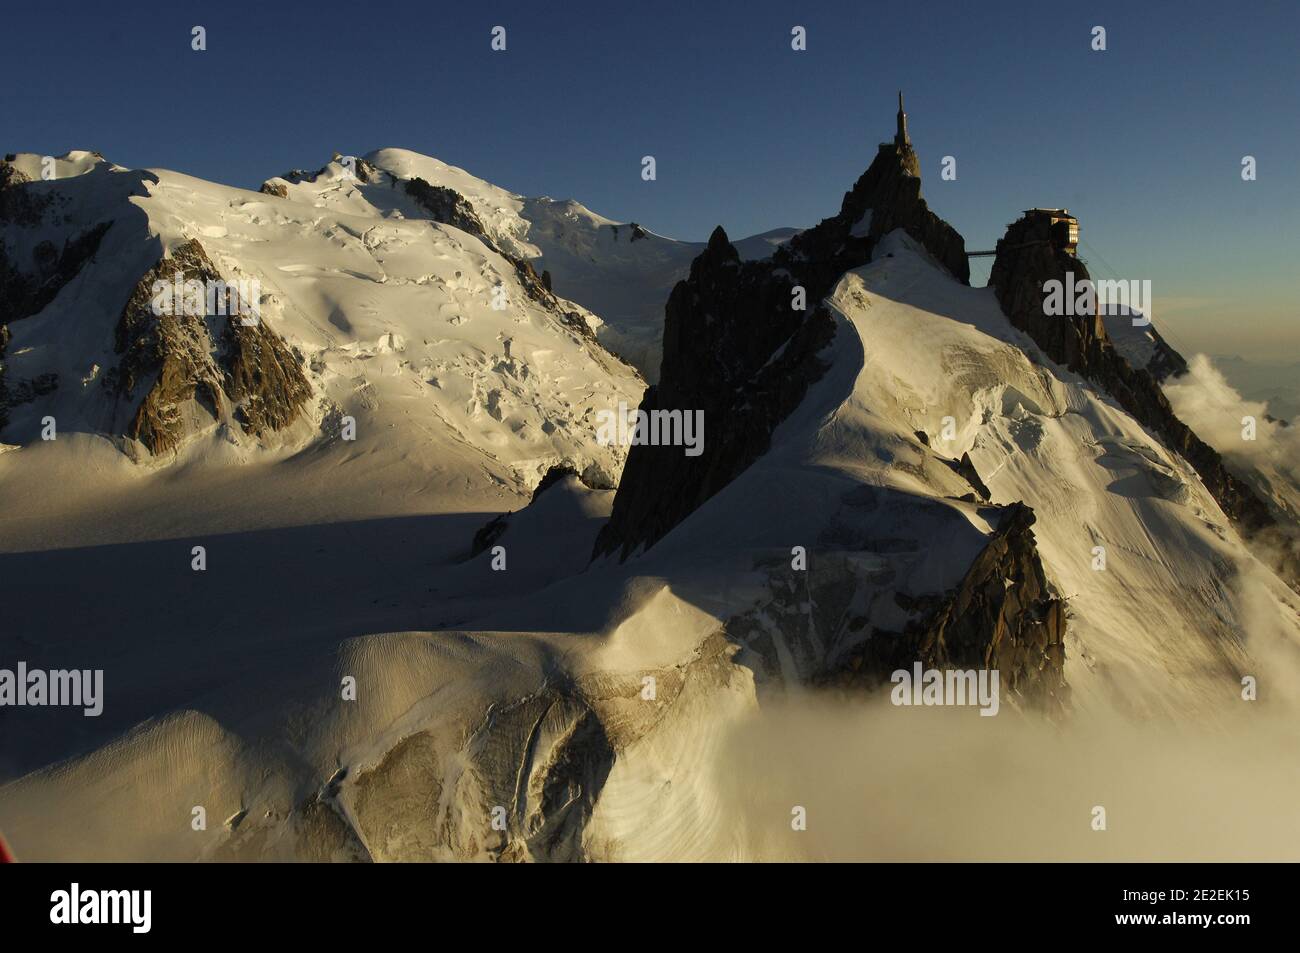 Overview of the Mont Blanc mountain, snow, clouds, Alpes, France.Survol du Massif du Mont Blanc, montagne, neige, nuages, Alpes, France, 2007.Photo by David Lefranc/ABACAPRESS.COM Stock Photo